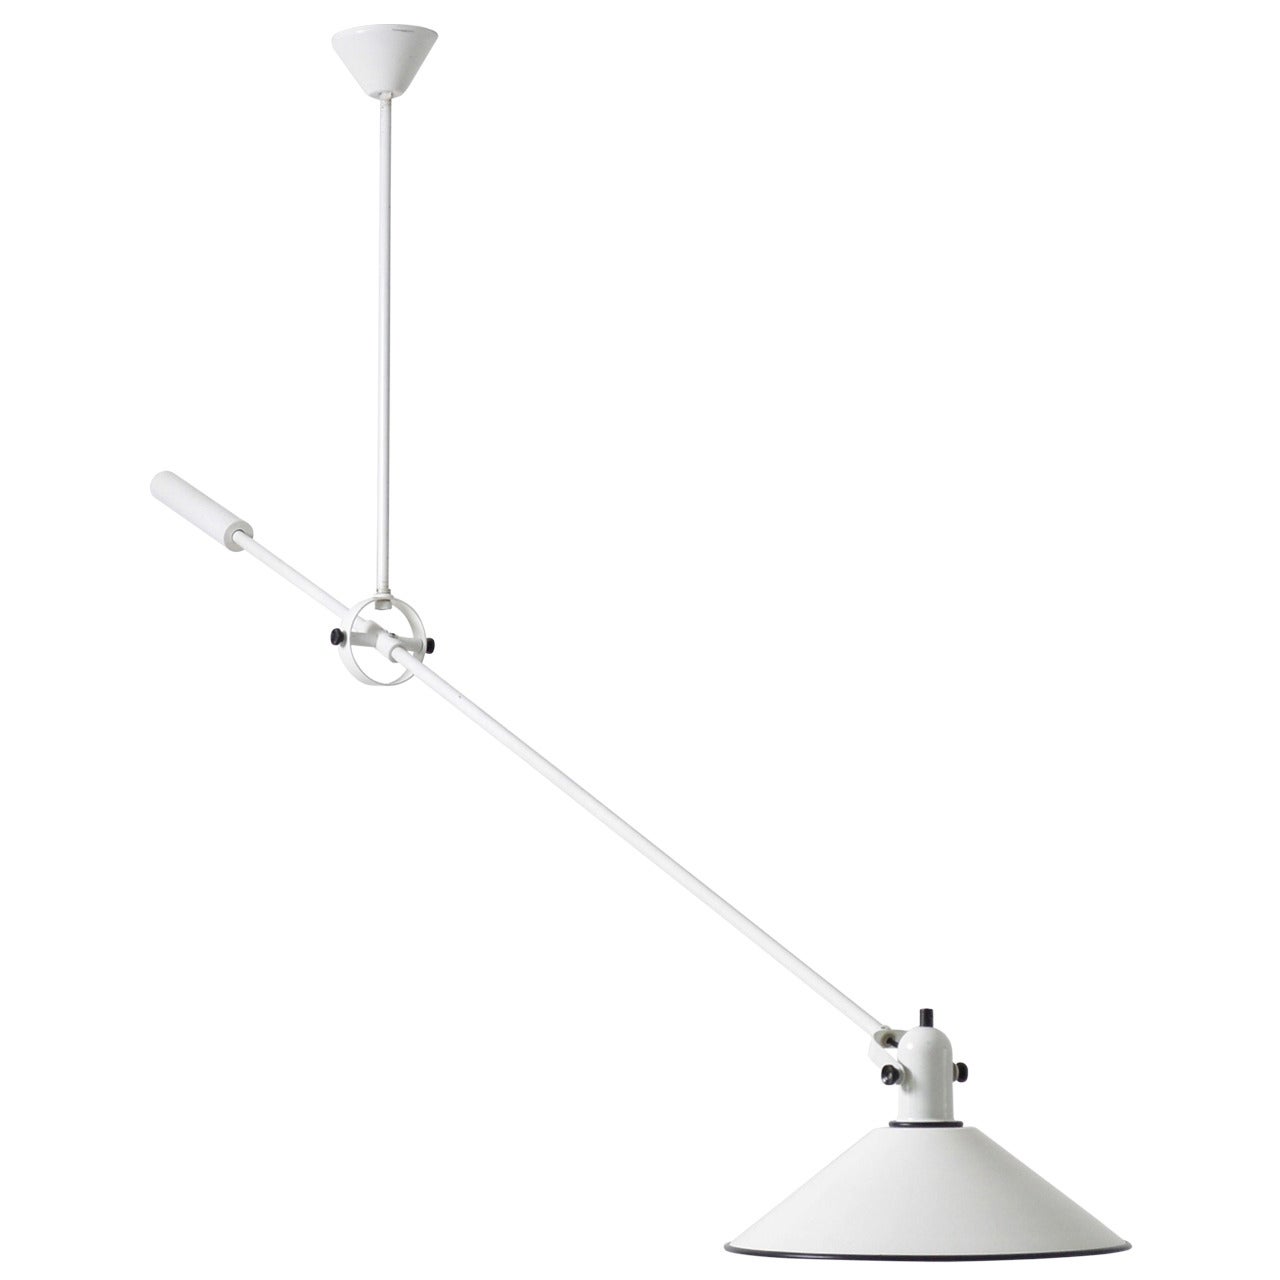 JJM Hoogervorst Ceiling Lamp White / Black also available